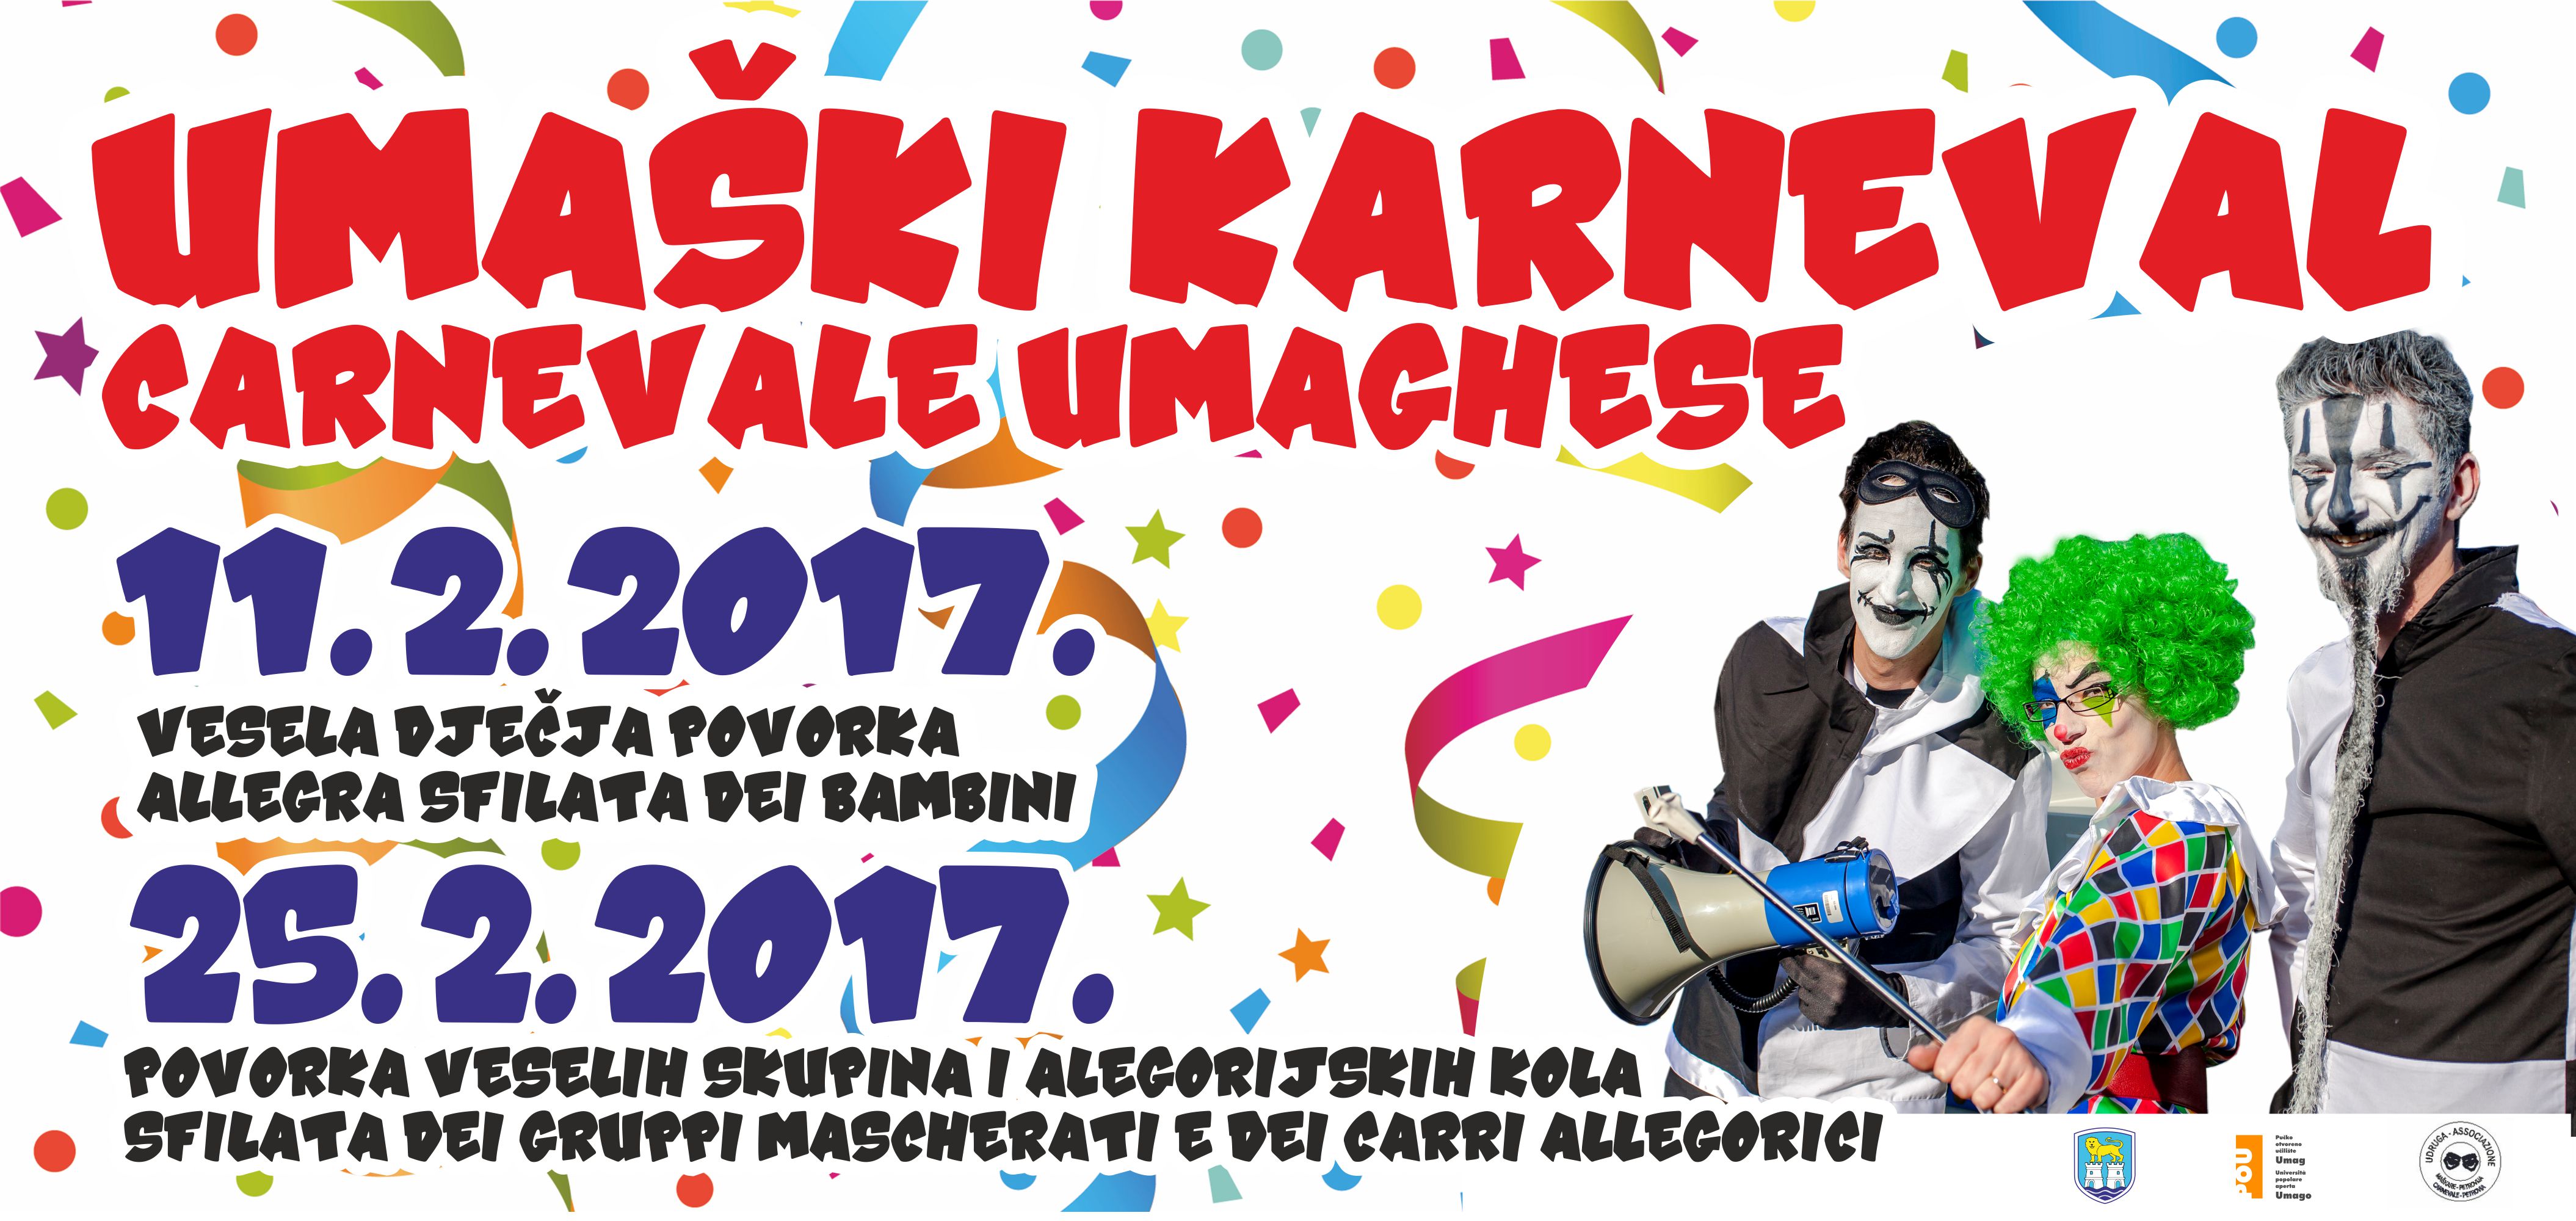 UMAŠKI KARNEVAL 2017. - otvorene prijave za sudjelovanje